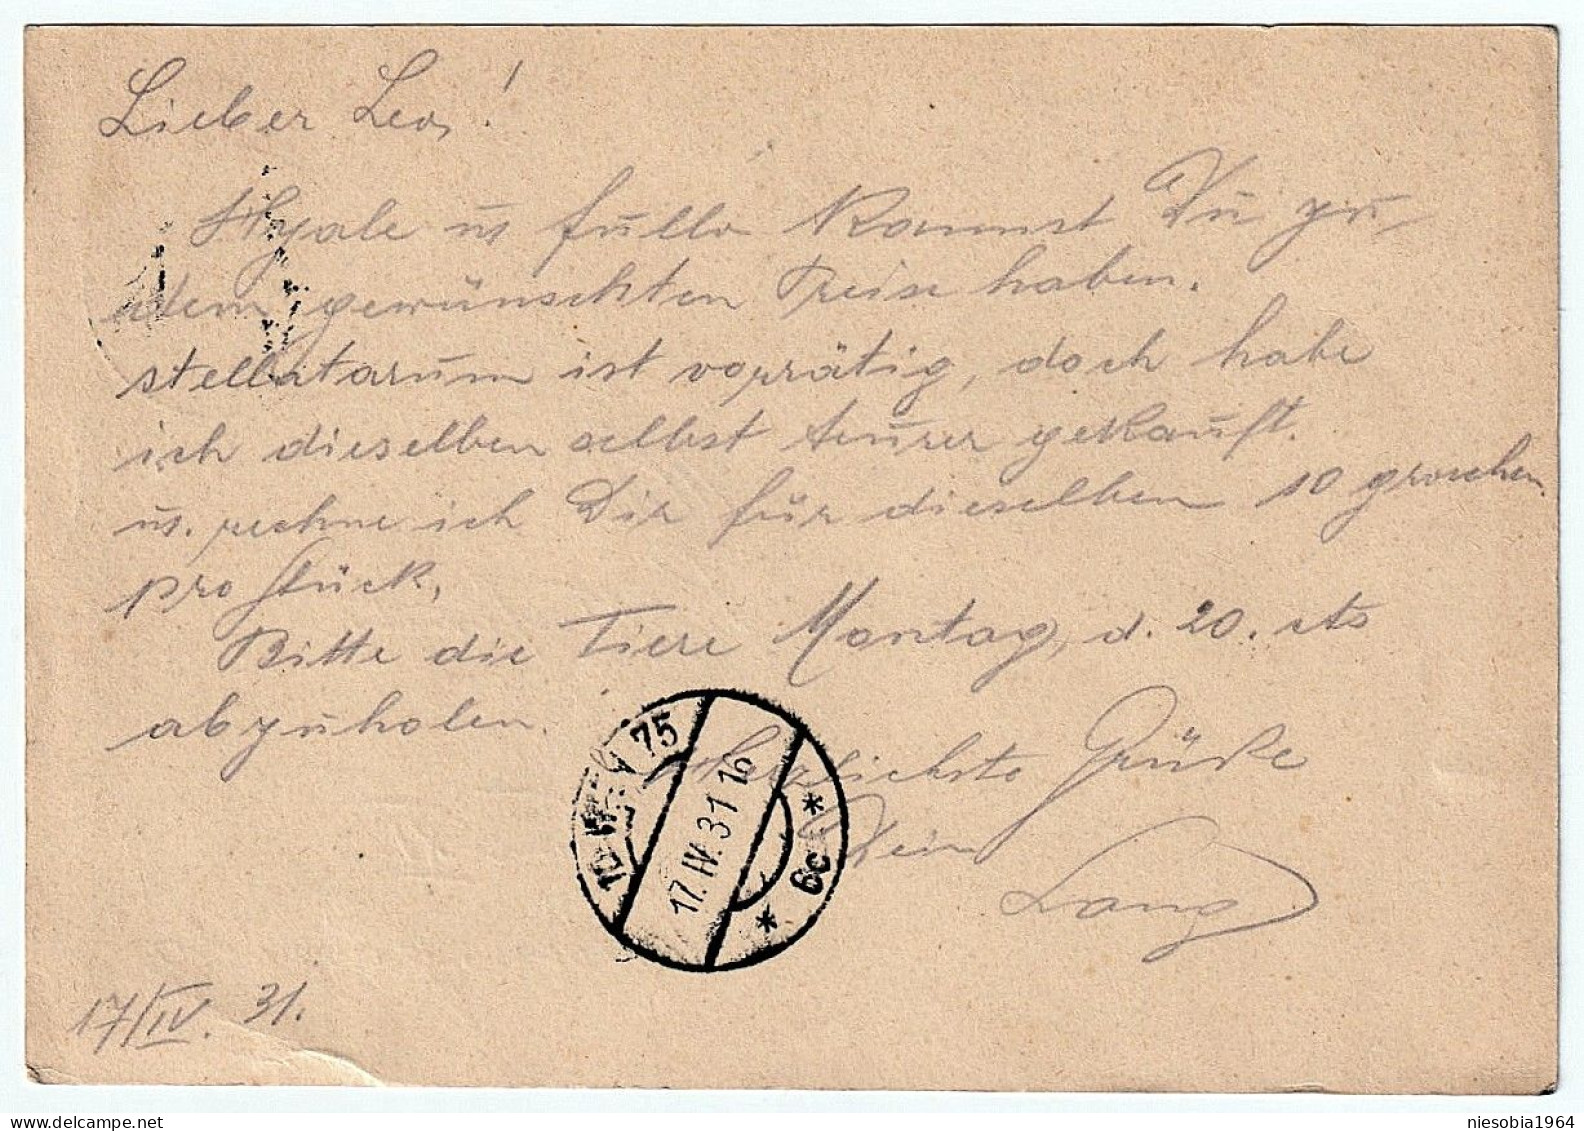 Österreich 10 Groschen Potkarte, Wiener Parlament. Stempel, Adolf Lang Wien Vorlaufstrasse 4 - Siegel Wien 1931 - Lettres & Documents